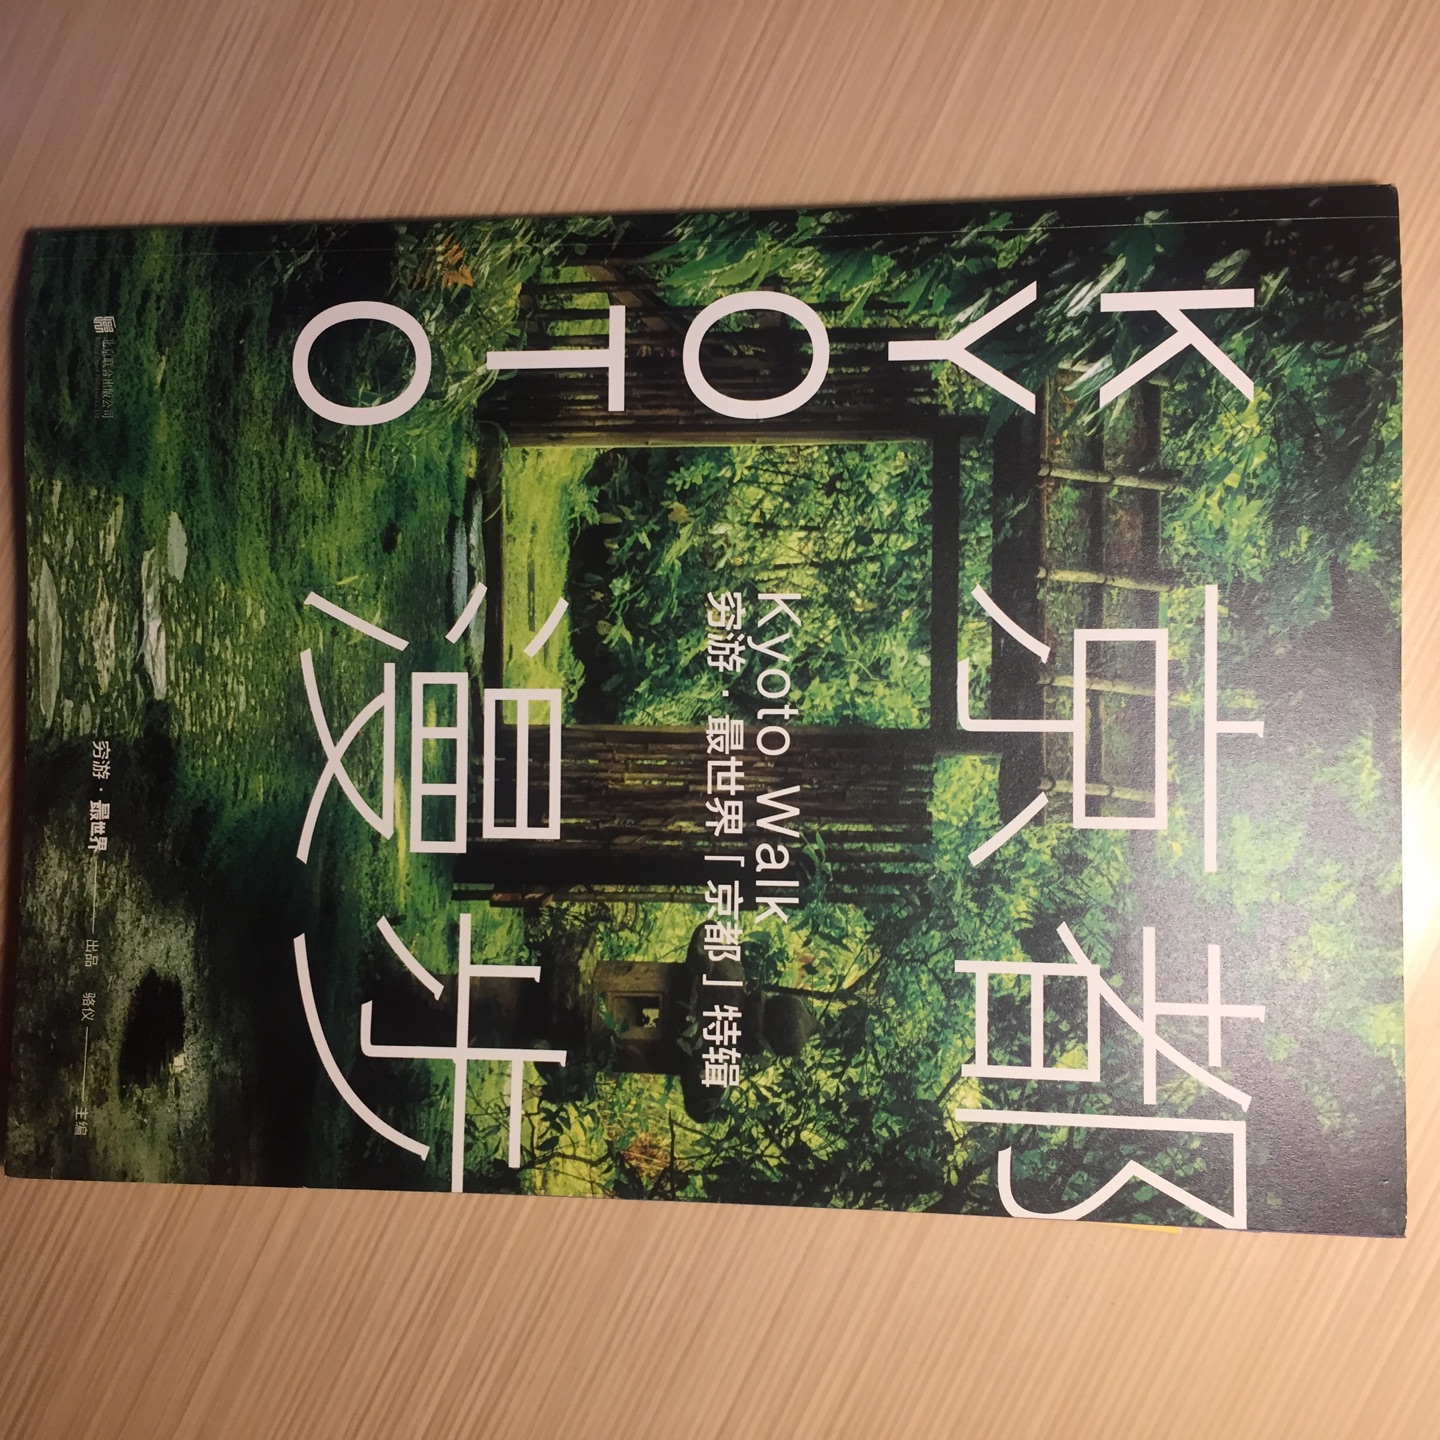 上午下单晚上就收货了，真是快！这本书除了旅游的一些介绍，还有一些人文的东西可以了解京都的前世今生，和京都不同于日本其他城市的文化